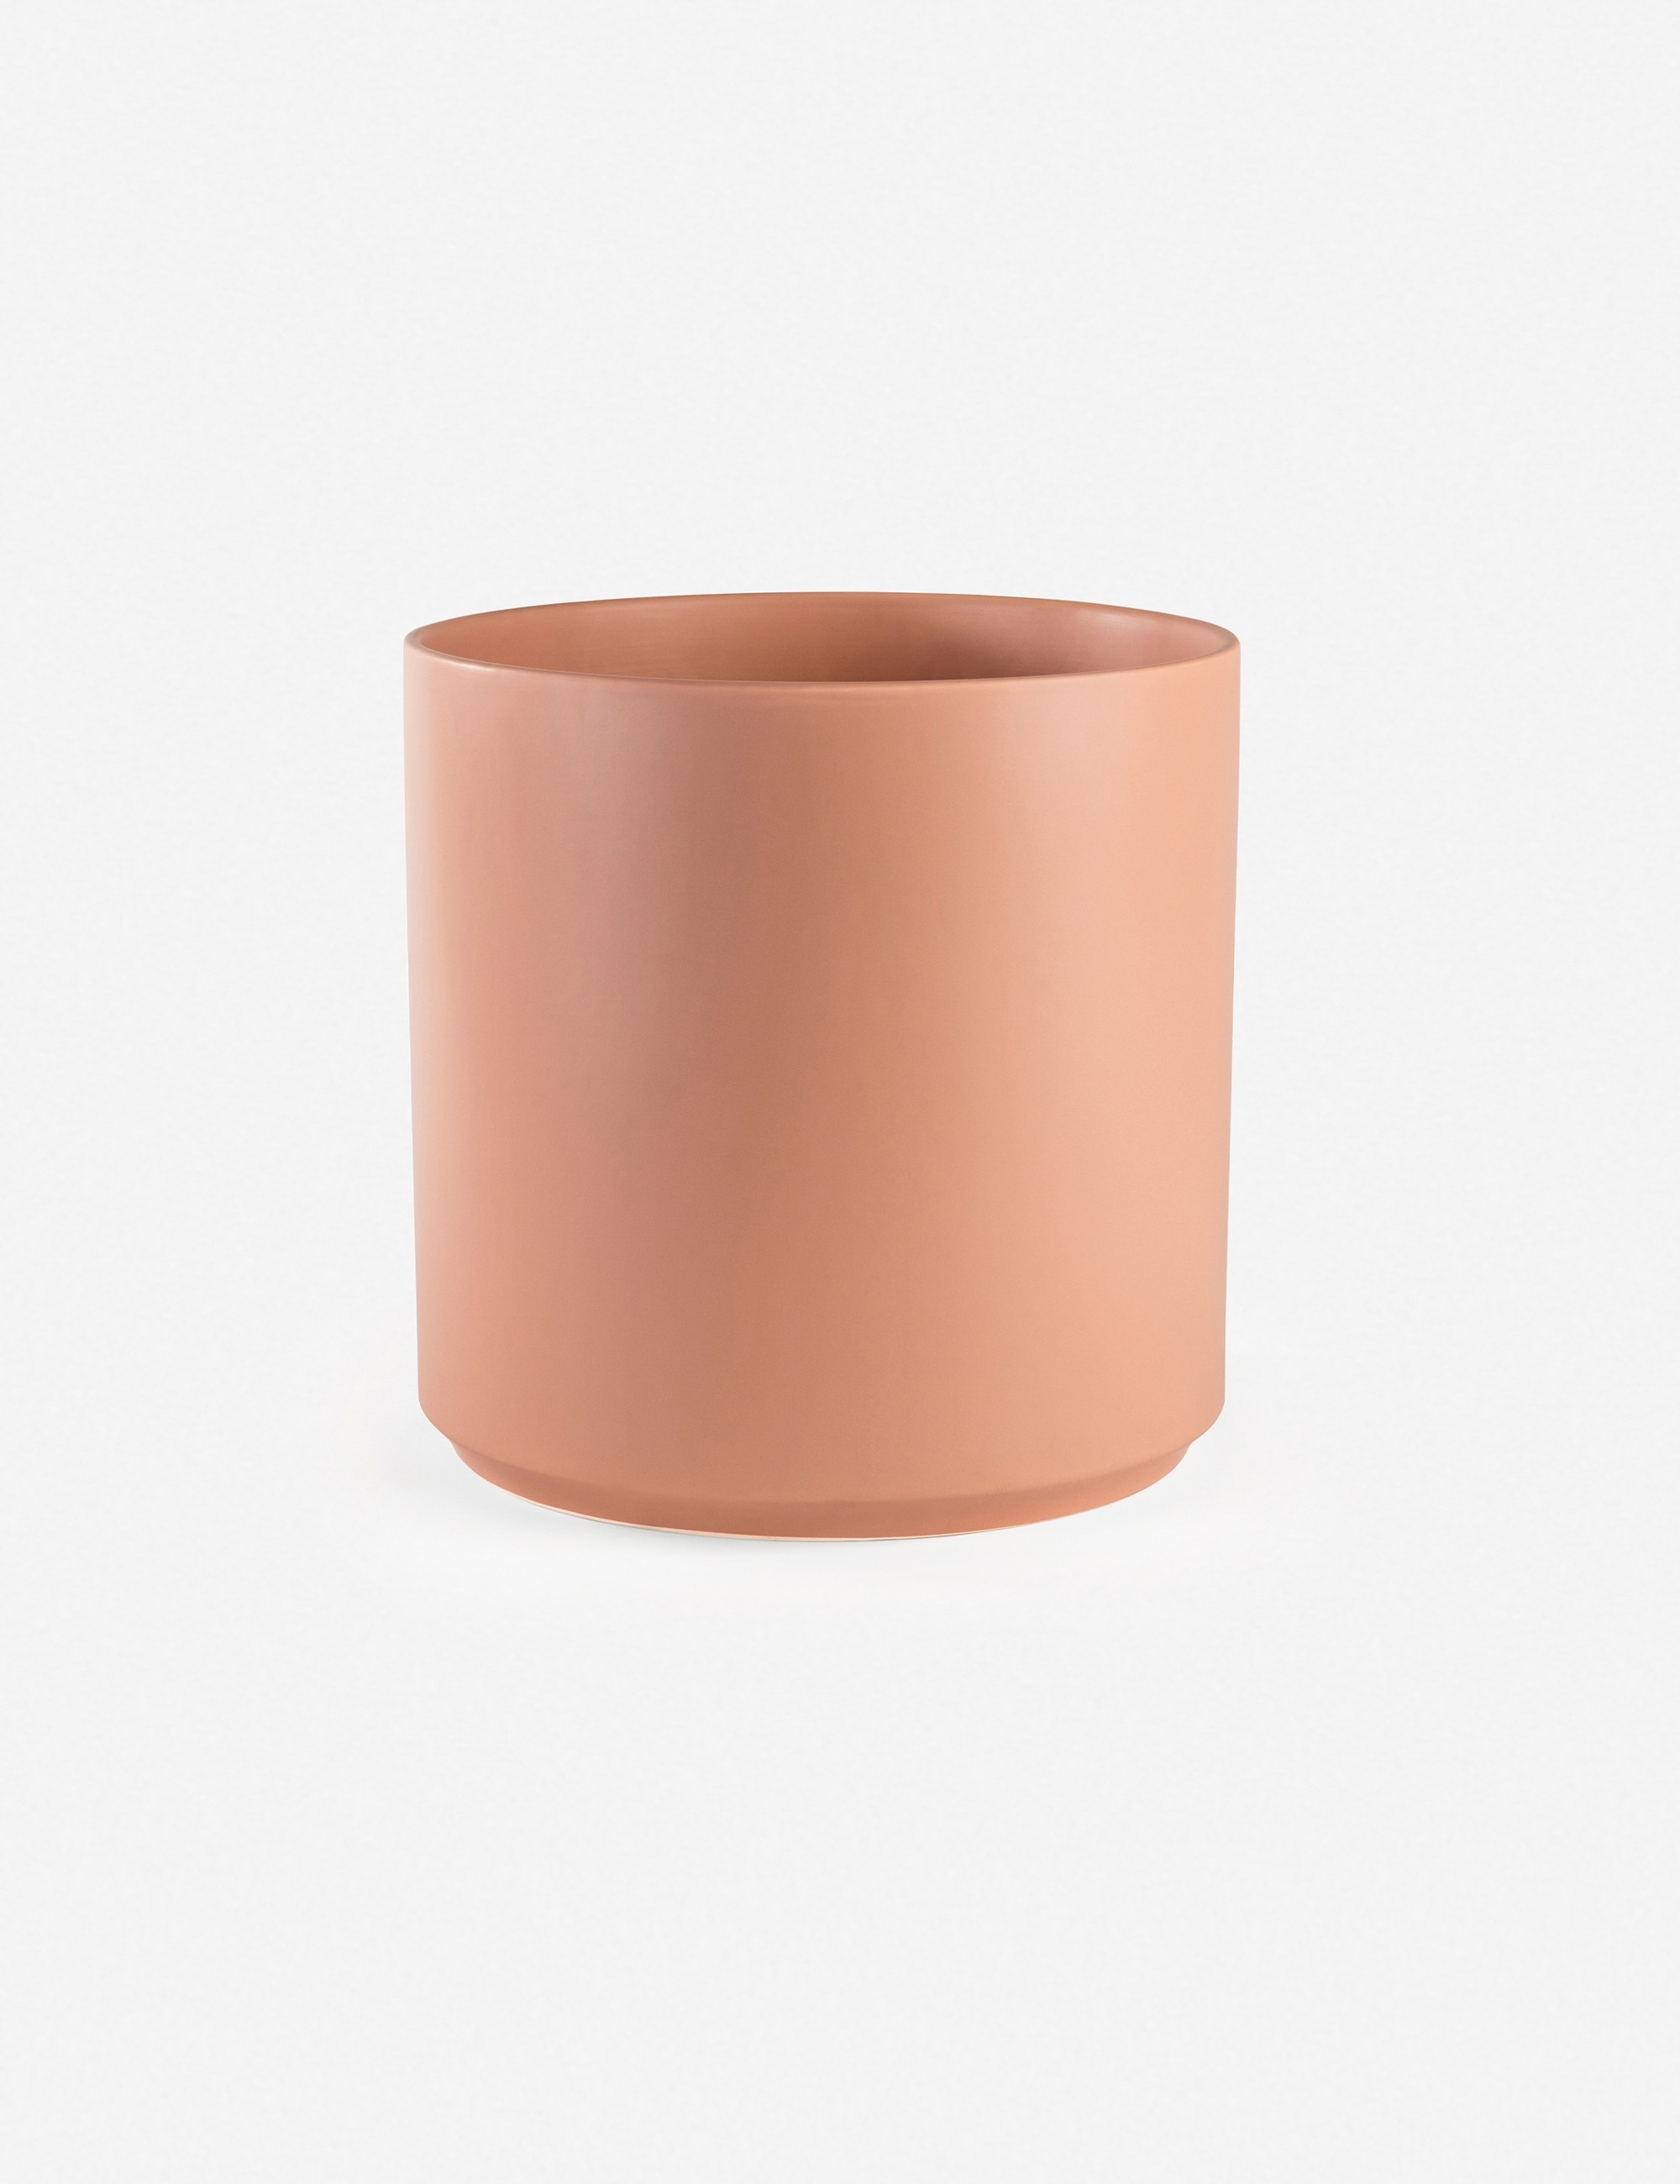 LBE Design Ceramic Planter, Peach 13"Dia x 18"H - with stand - Image 5